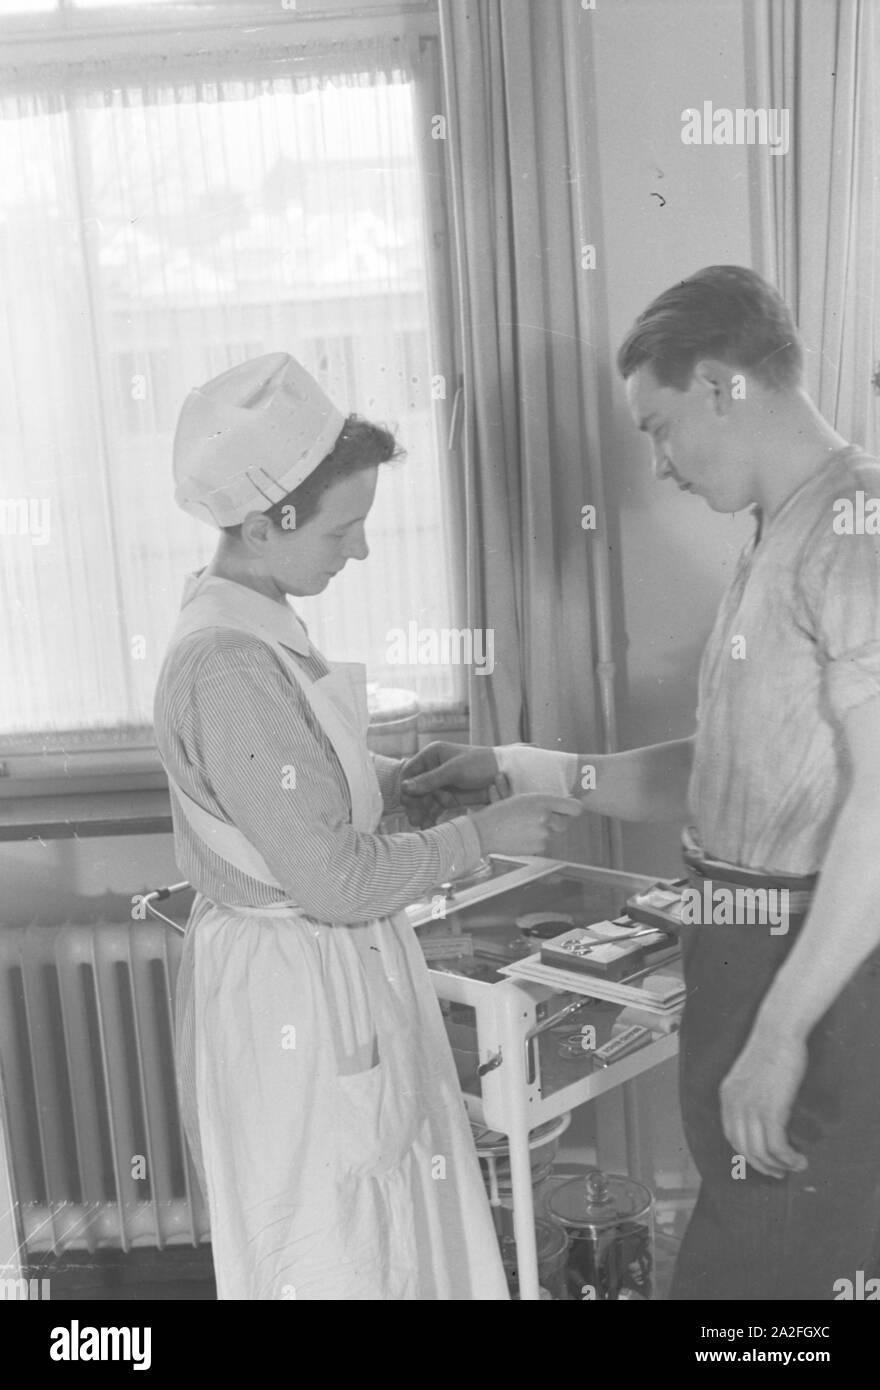 Eine Krankenschwester vebindet das verletzte handgelenk eines jungen Mannes, Deutschland 1930er Jahre. A nurse is patching up the wounded wrist of a young man, Germany 1930s. Stock Photo